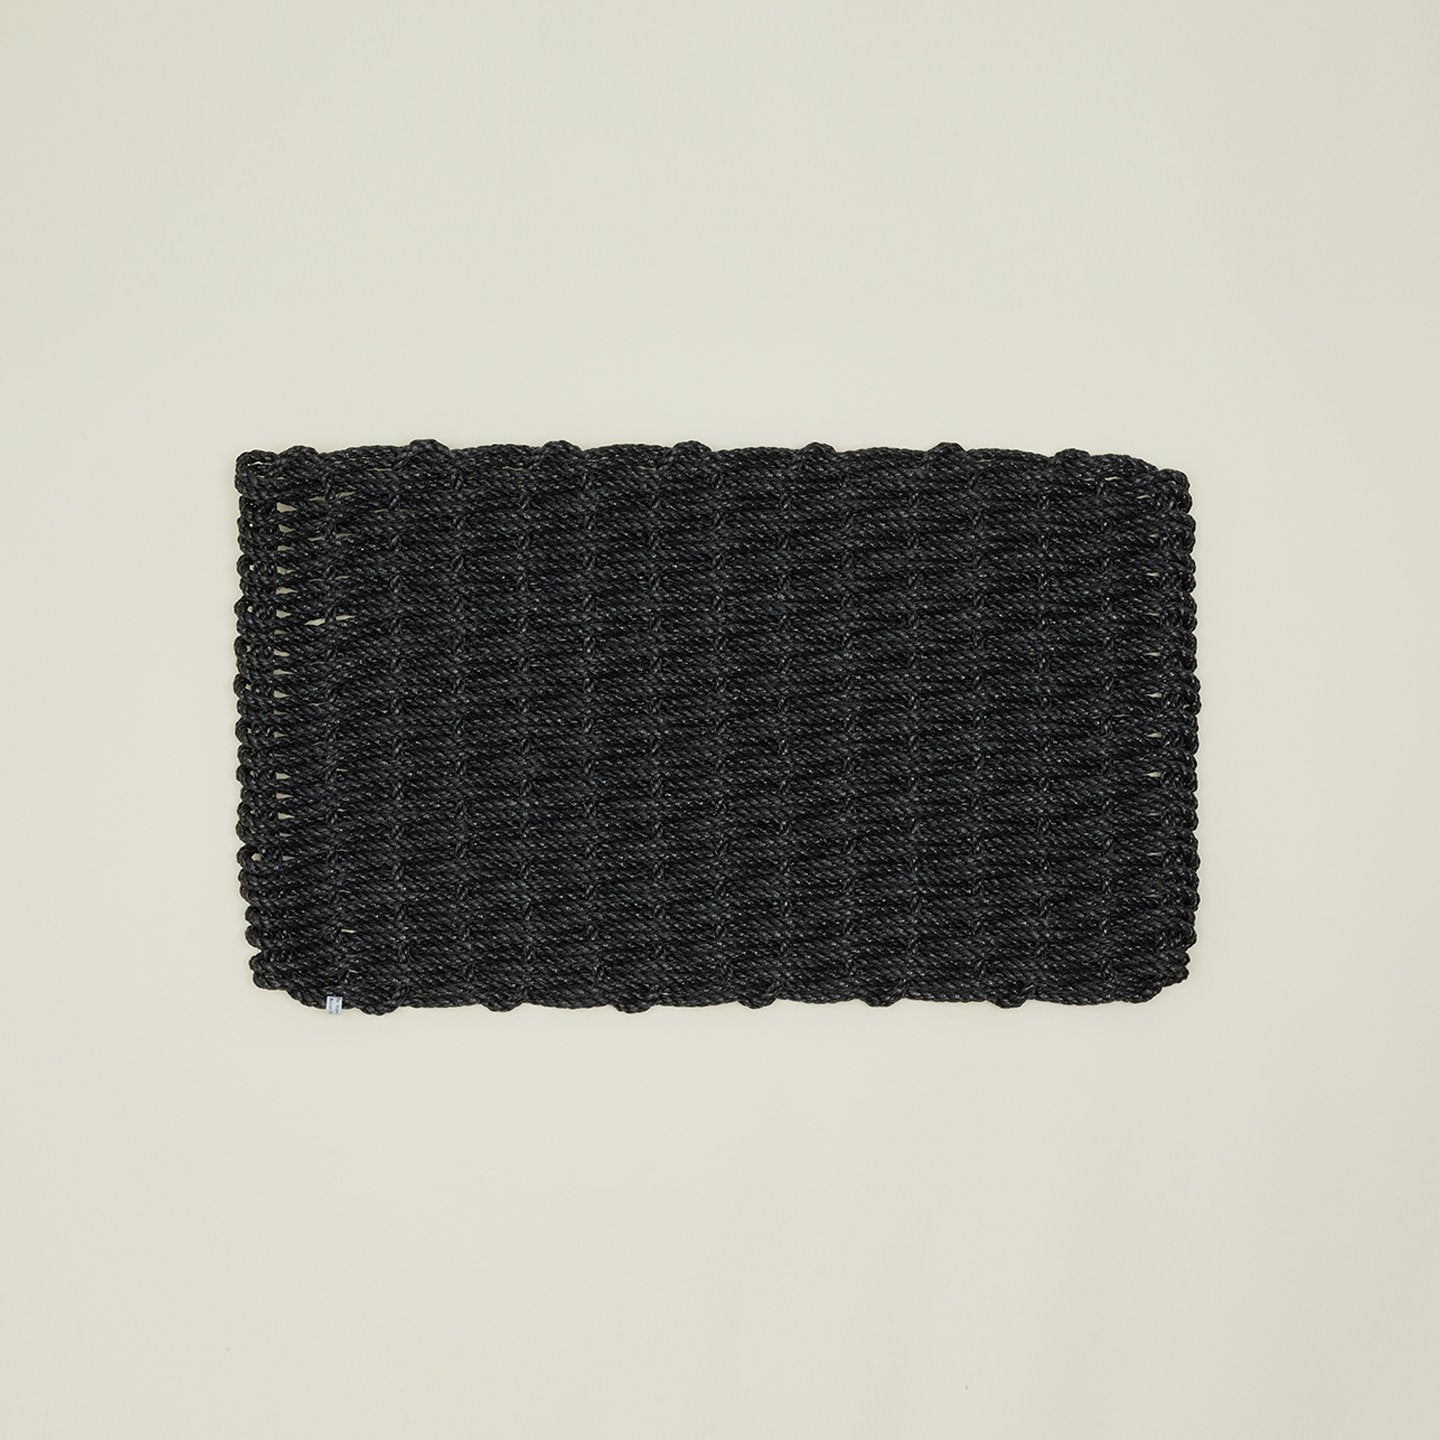 Woven Rope Doormat - Charcoal